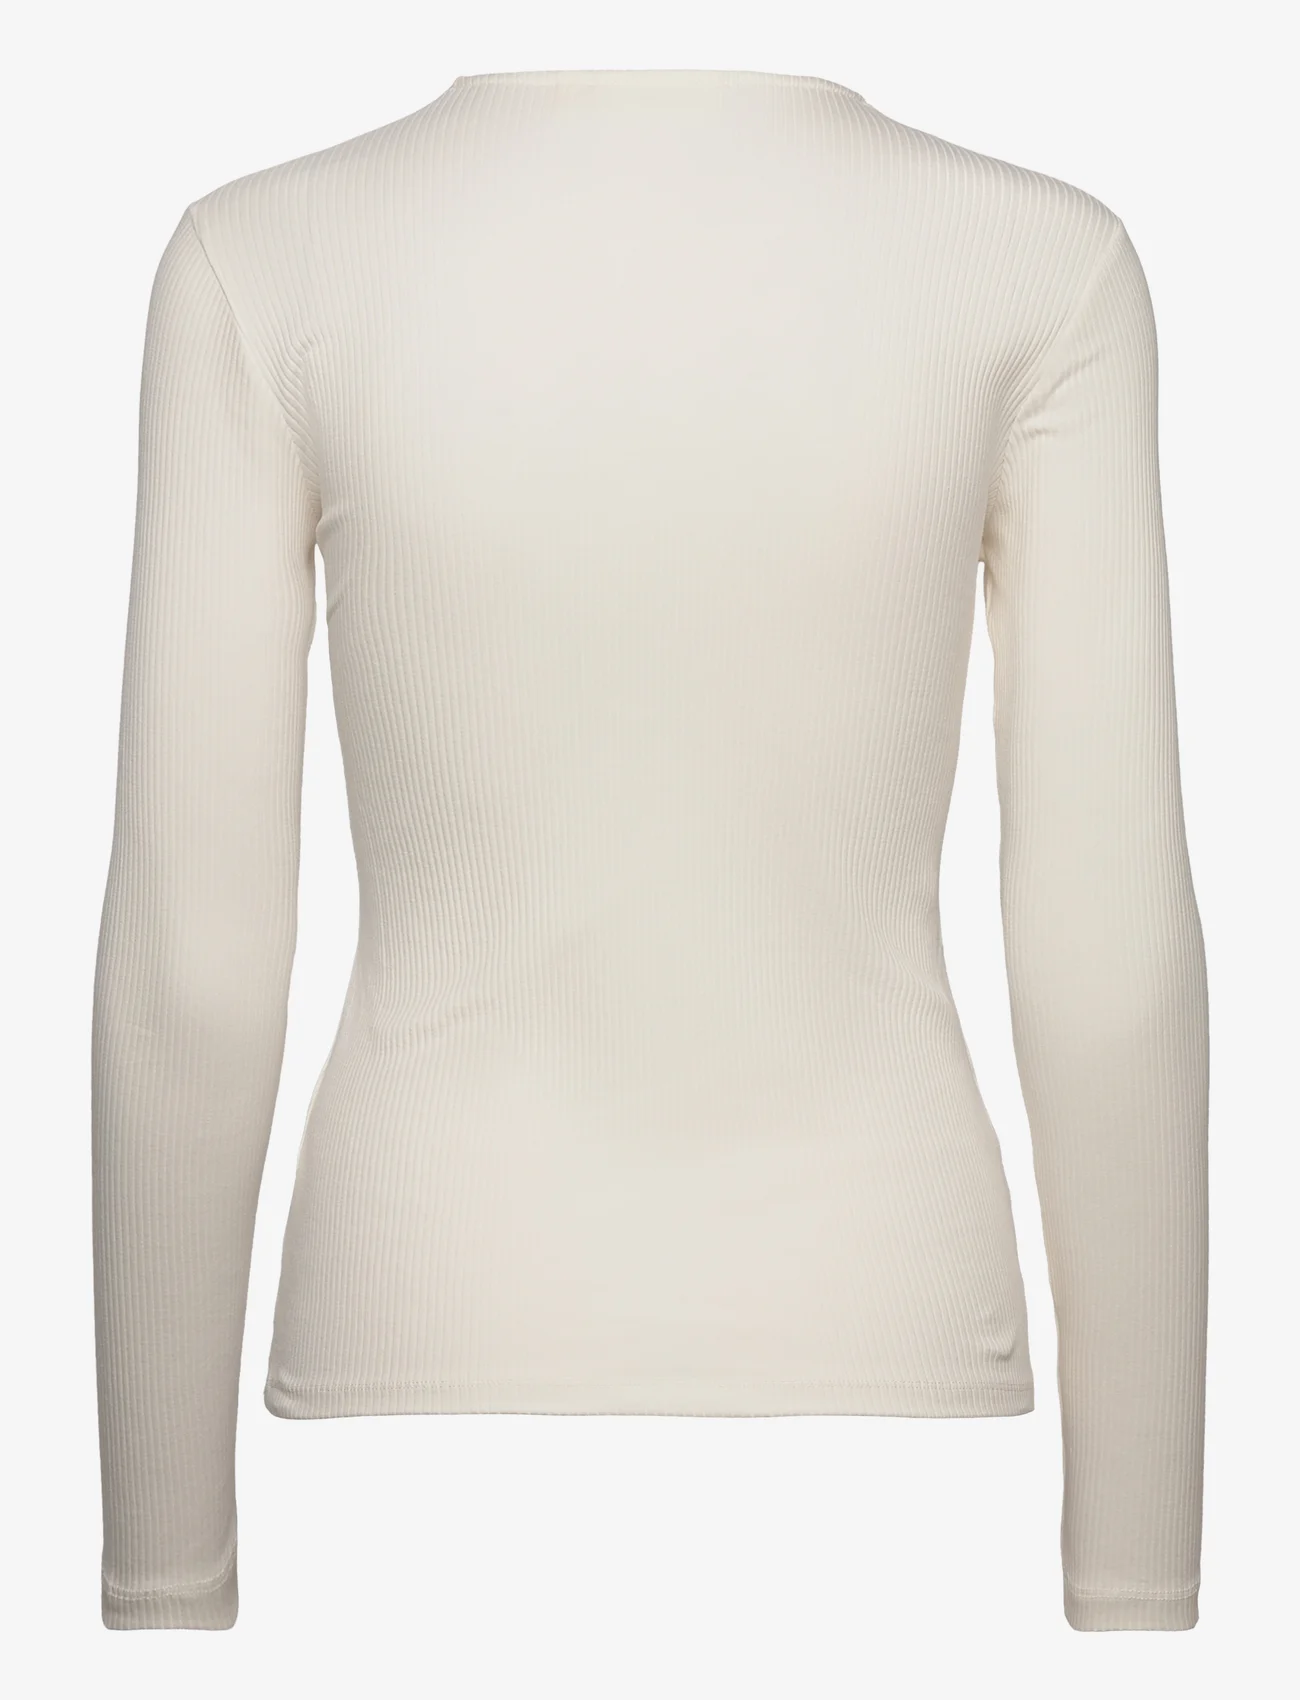 InWear - PukIW Long Sleeve - pitkähihaiset paidat - whisper white - 1